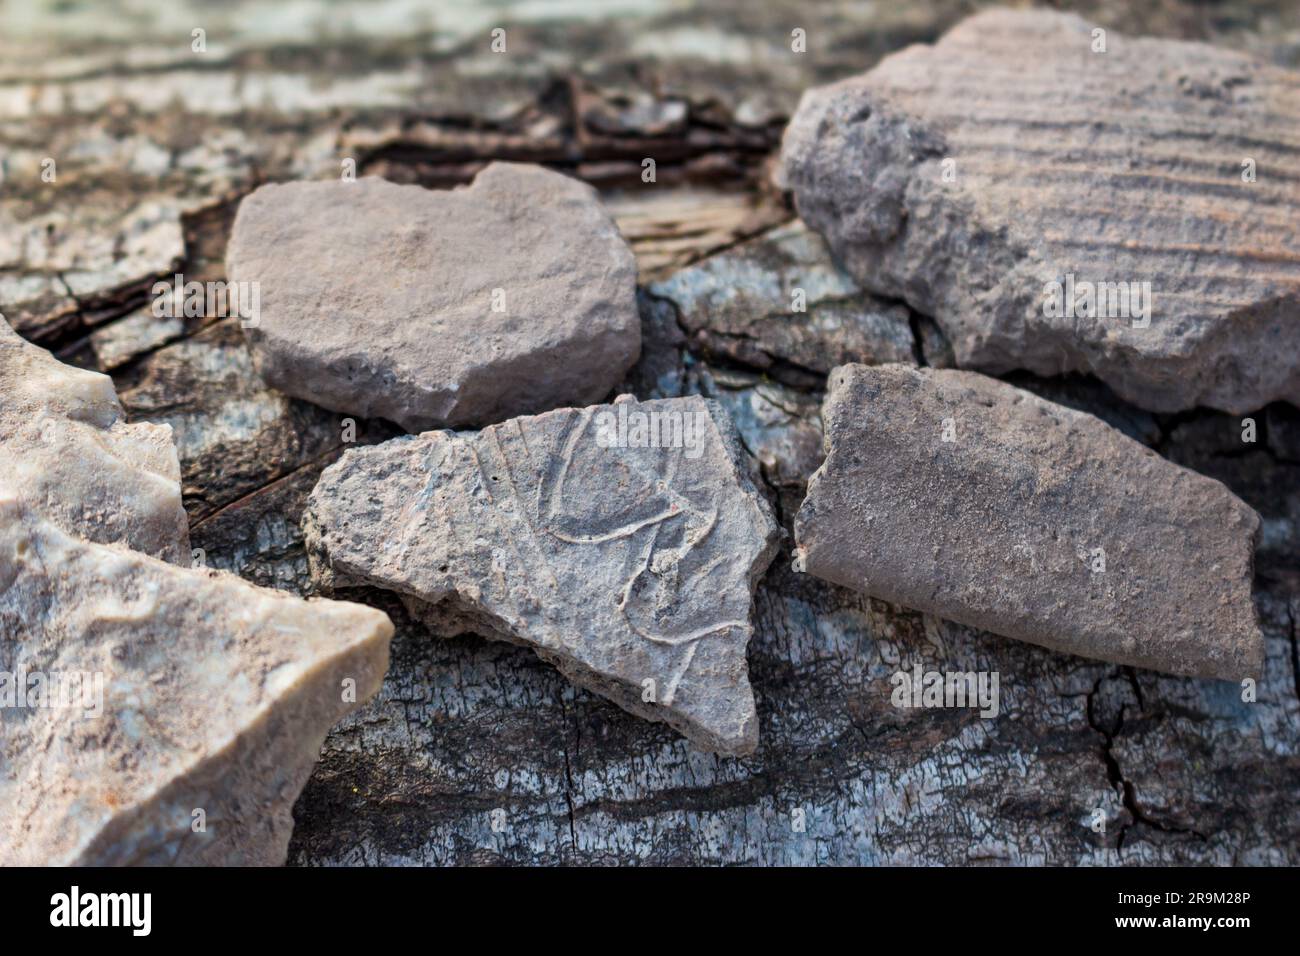 Fragments de navires en céramique trouvés dans le sol à l'emplacement d'un ancien règlement, objets archéologiques. Région de Kaluga, Russie Banque D'Images